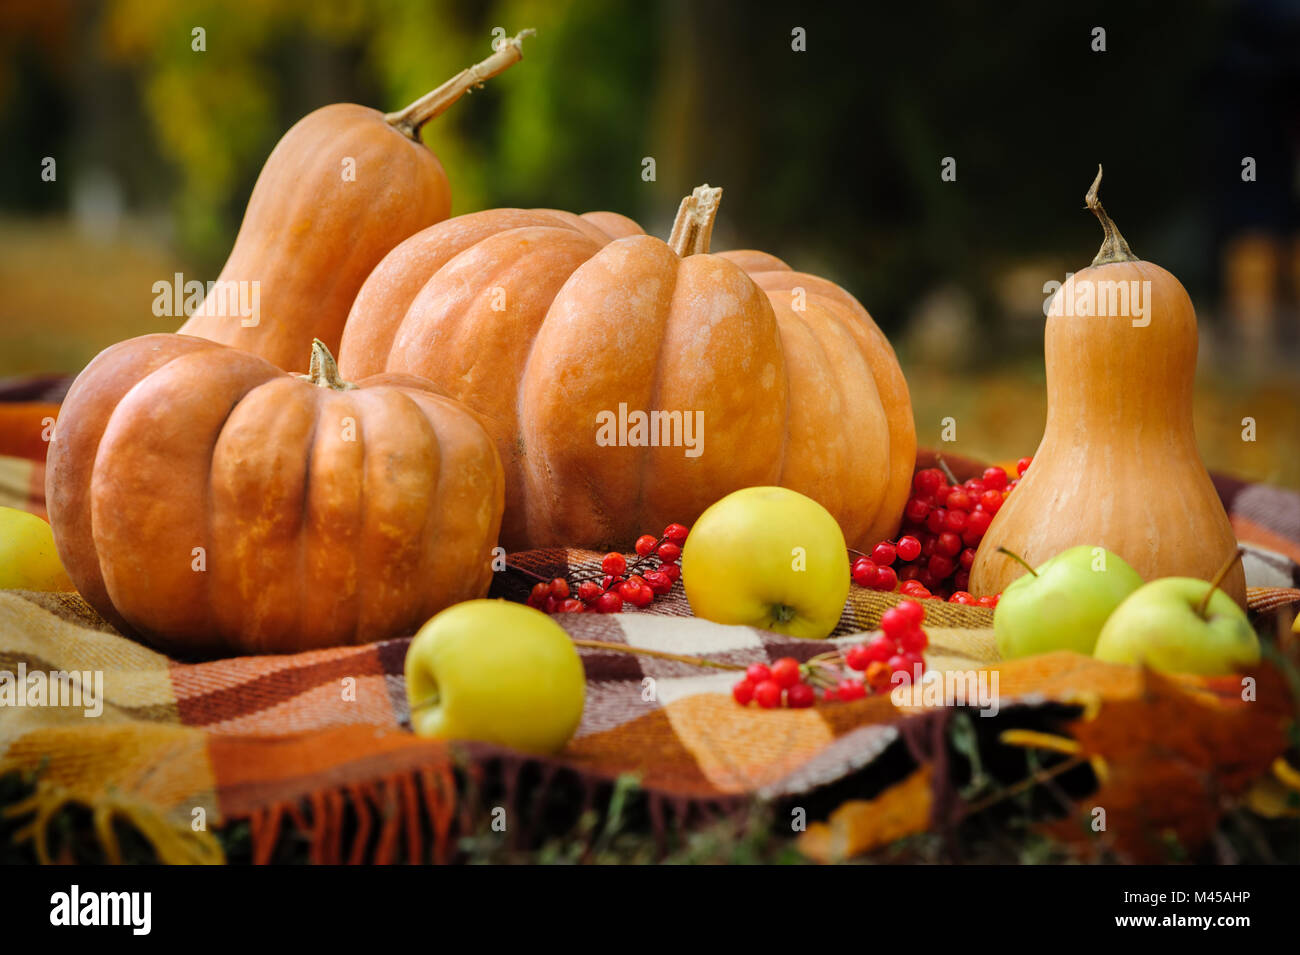 Autumn thanksgiving still life Stock Photo